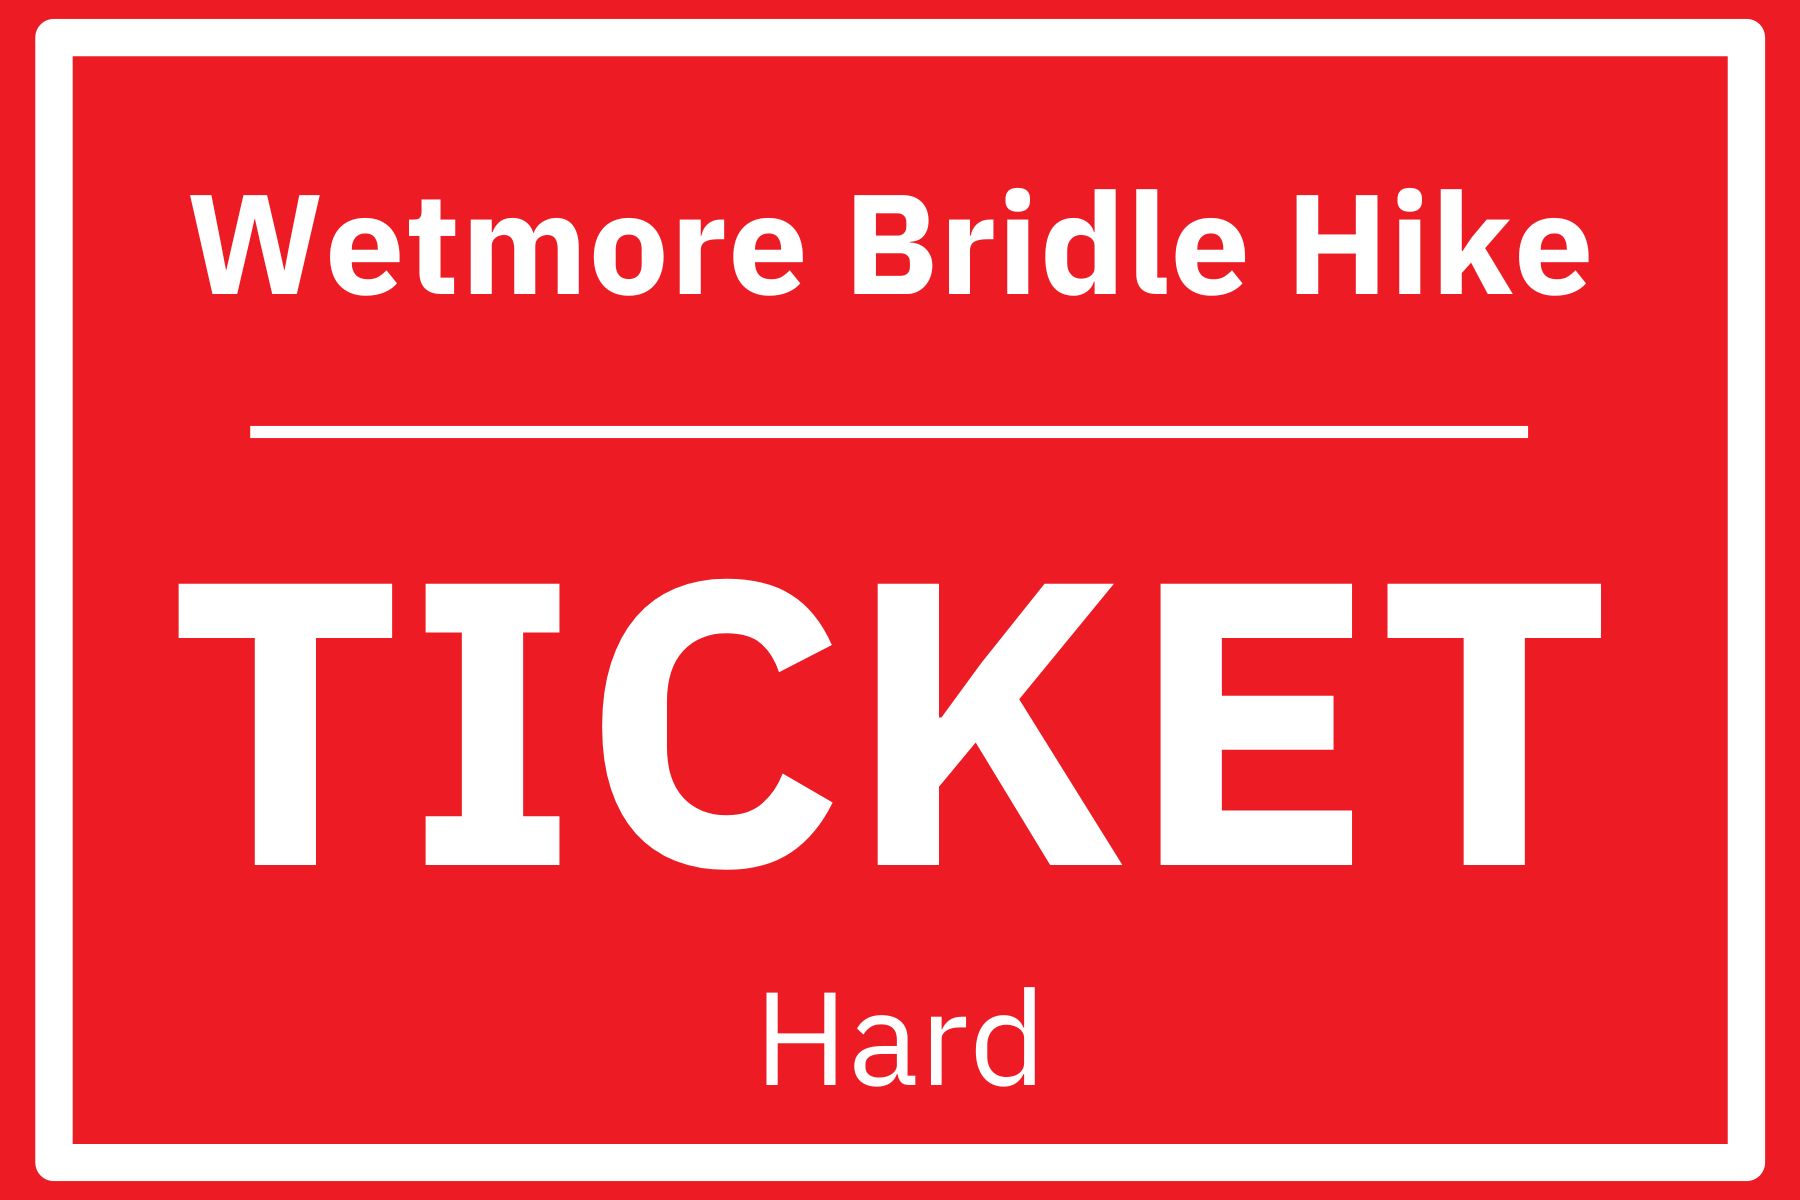 Wetmore Bridle Hike – Hard